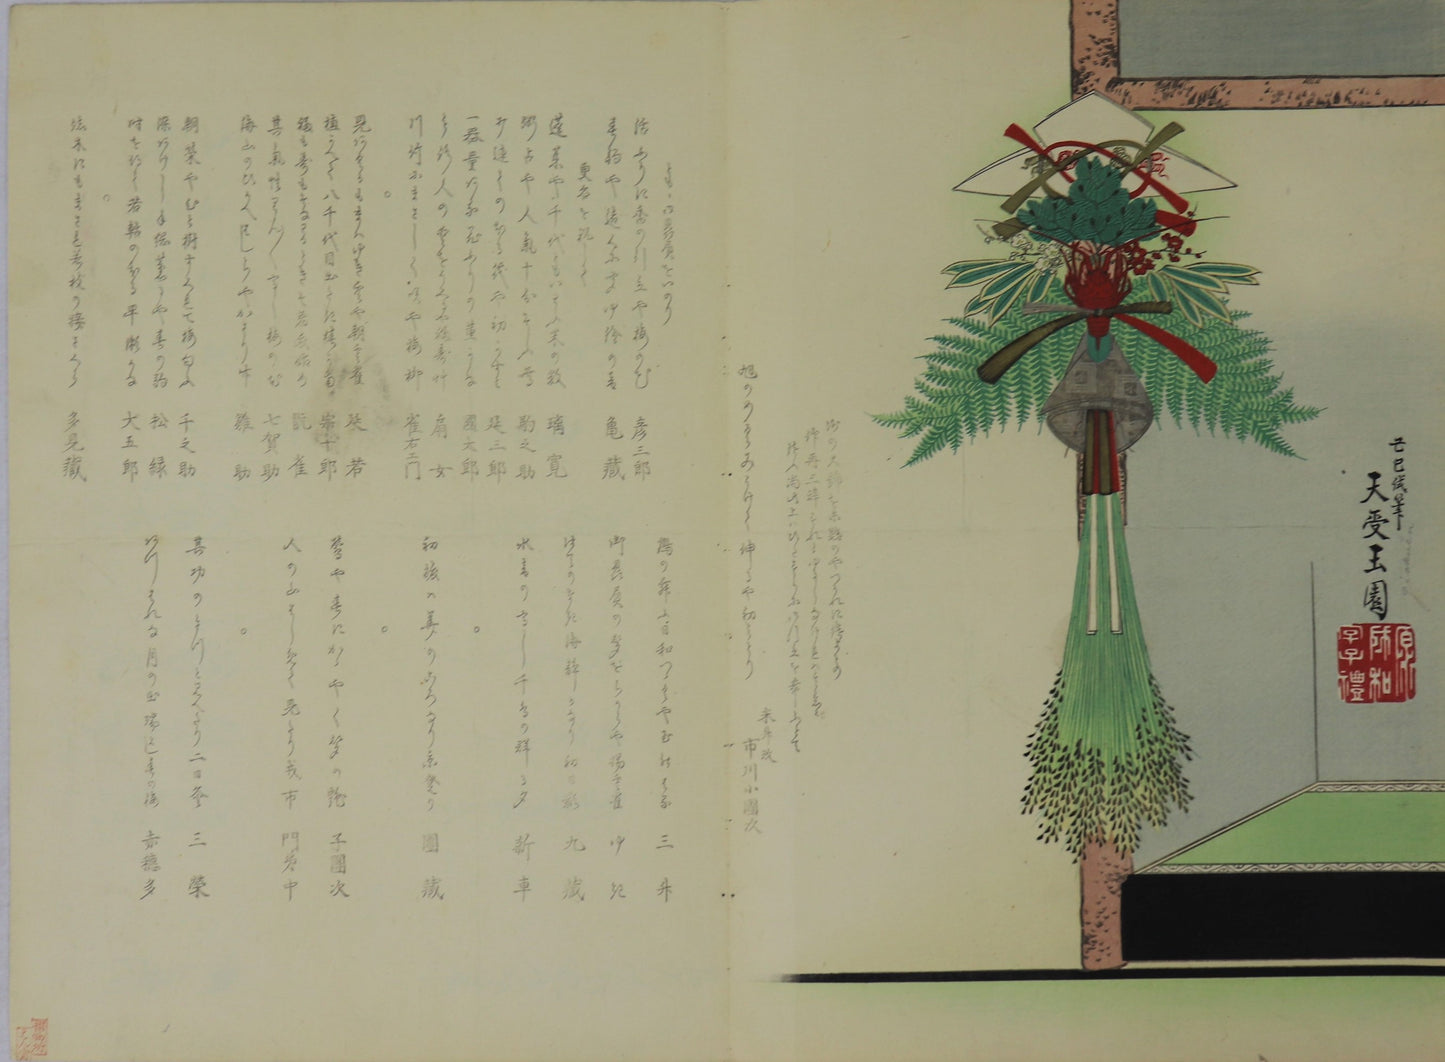 Celebration by Gyokuen / Célébration par Gyokuen (1860's)